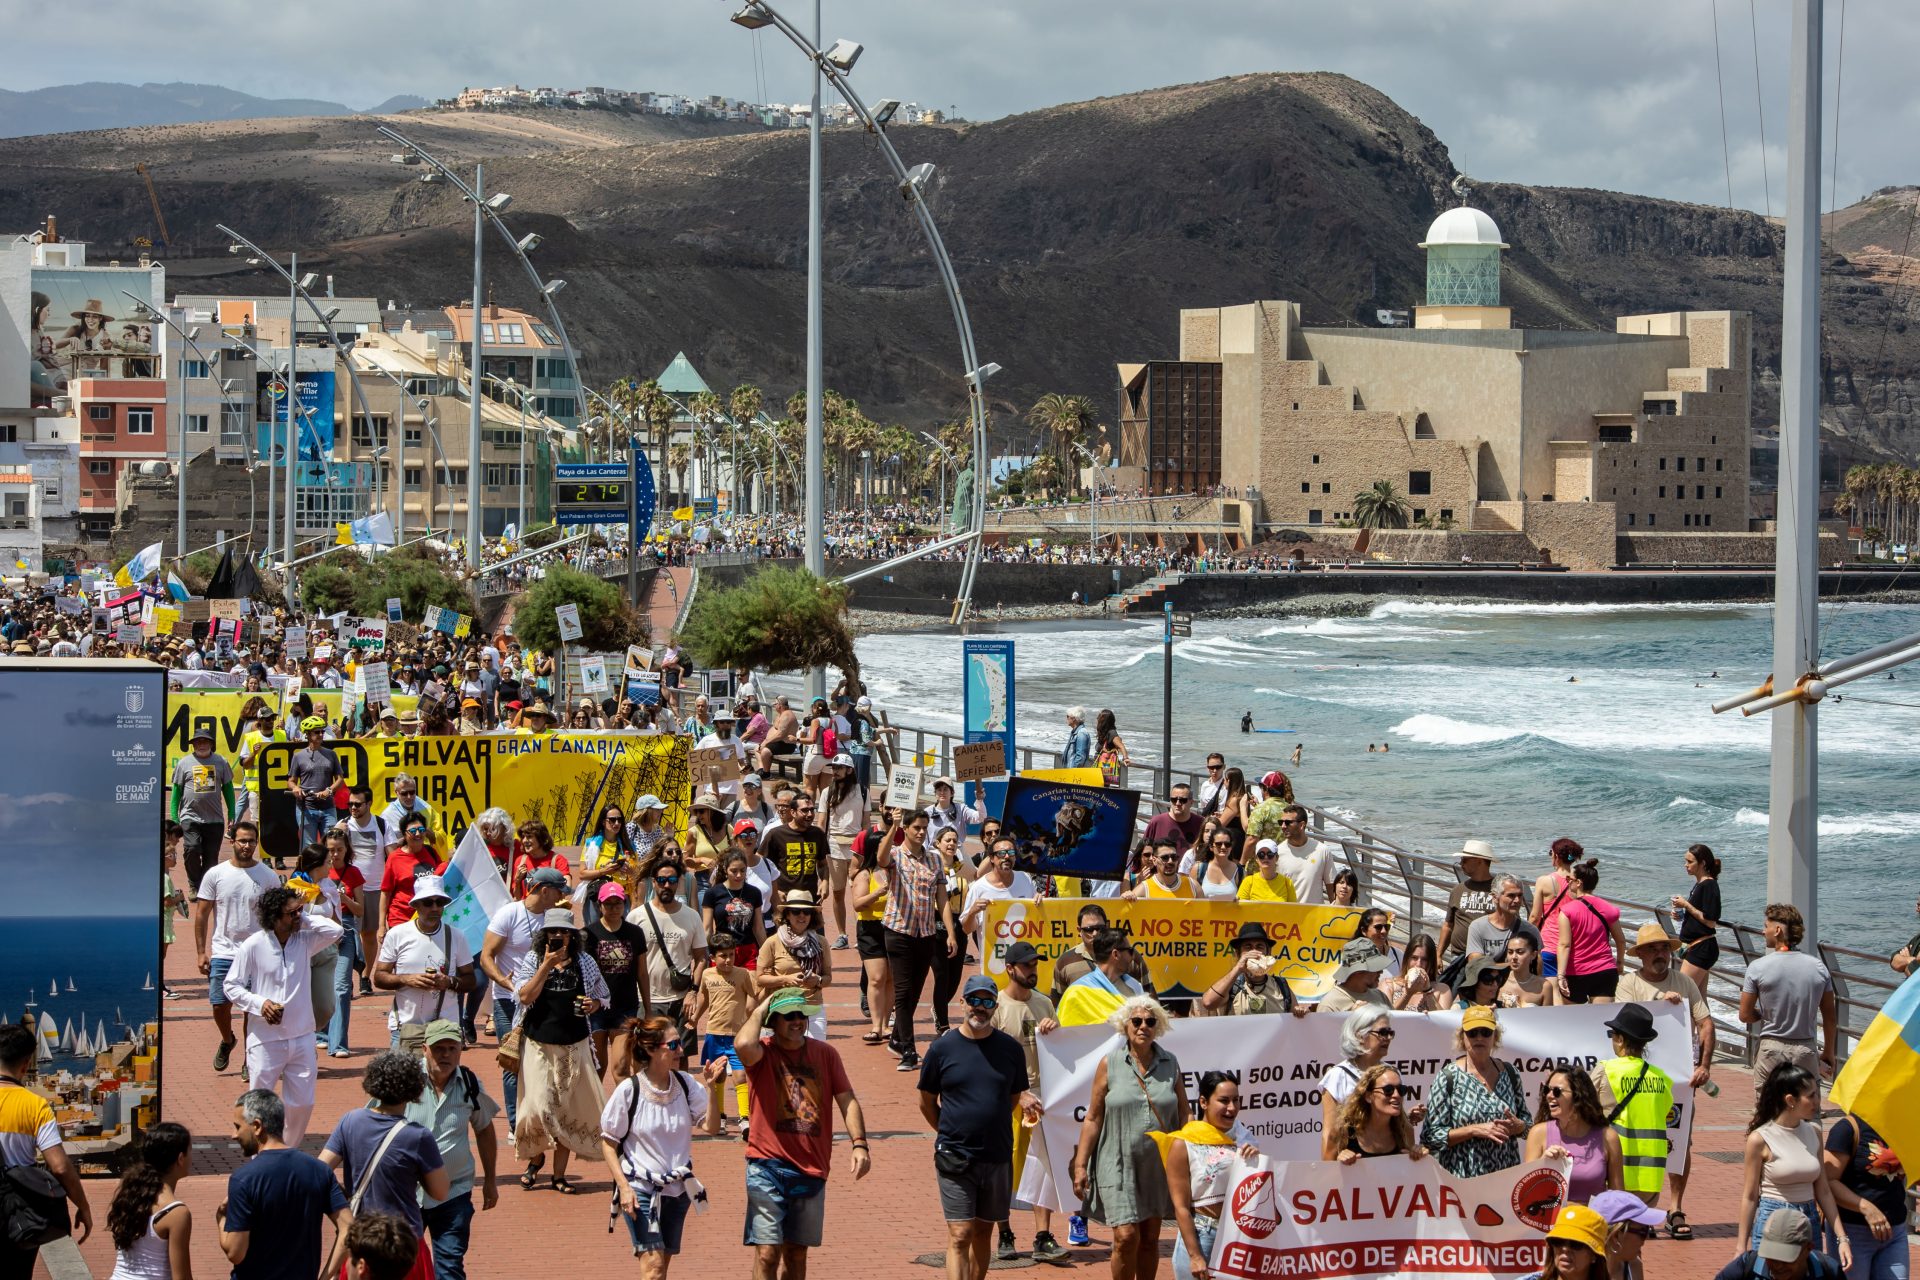 Grote protesten op de Canarische Eilanden